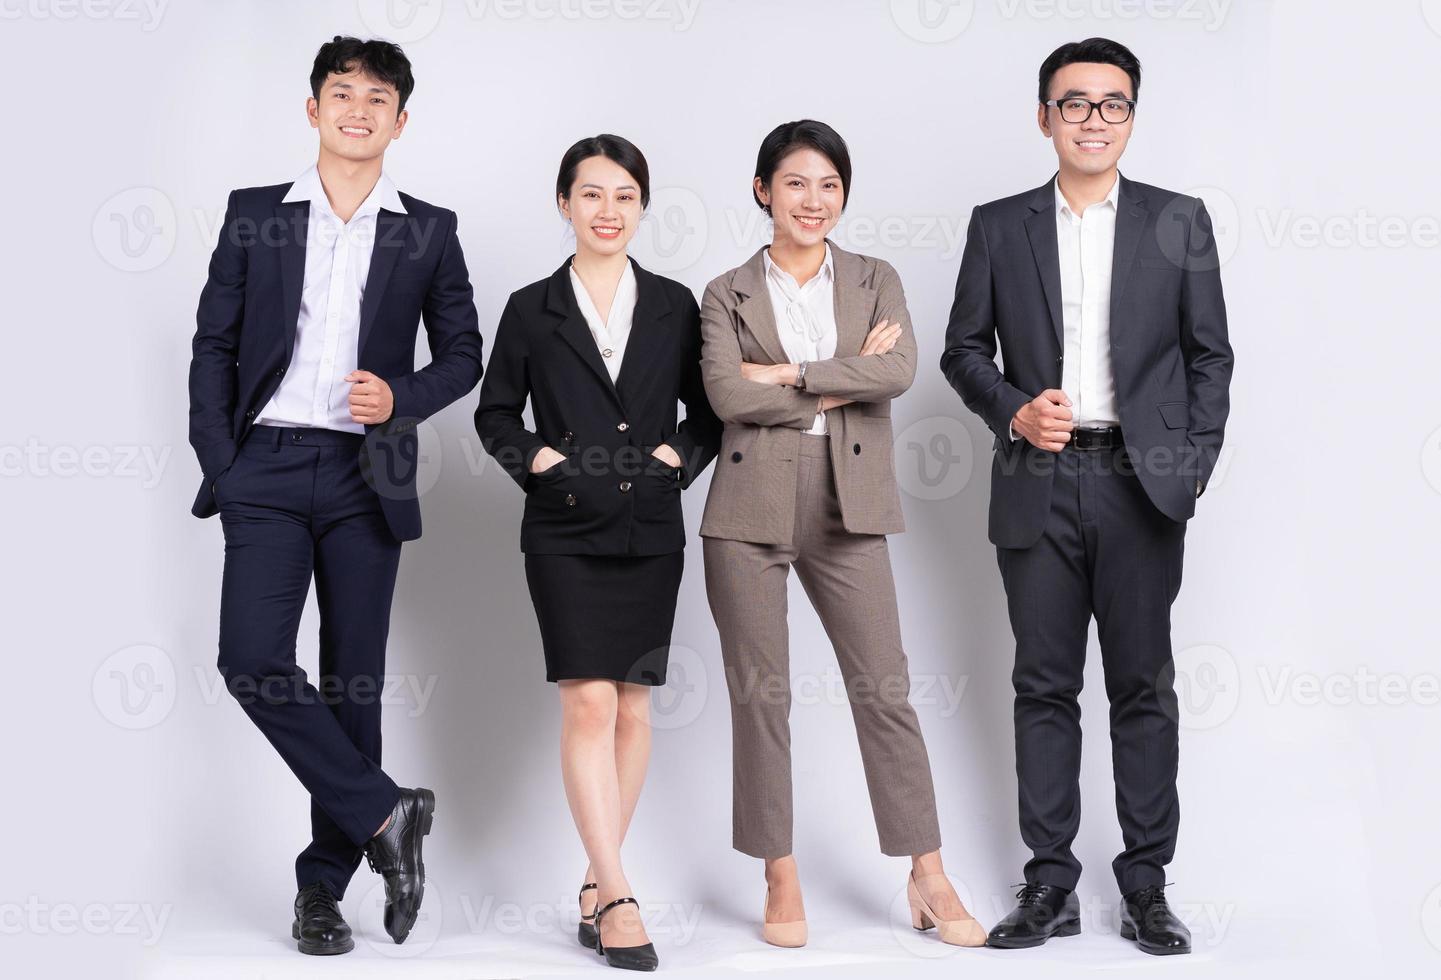 Gruppe asiatischer Geschäftsleute posiert auf weißem Hintergrund foto